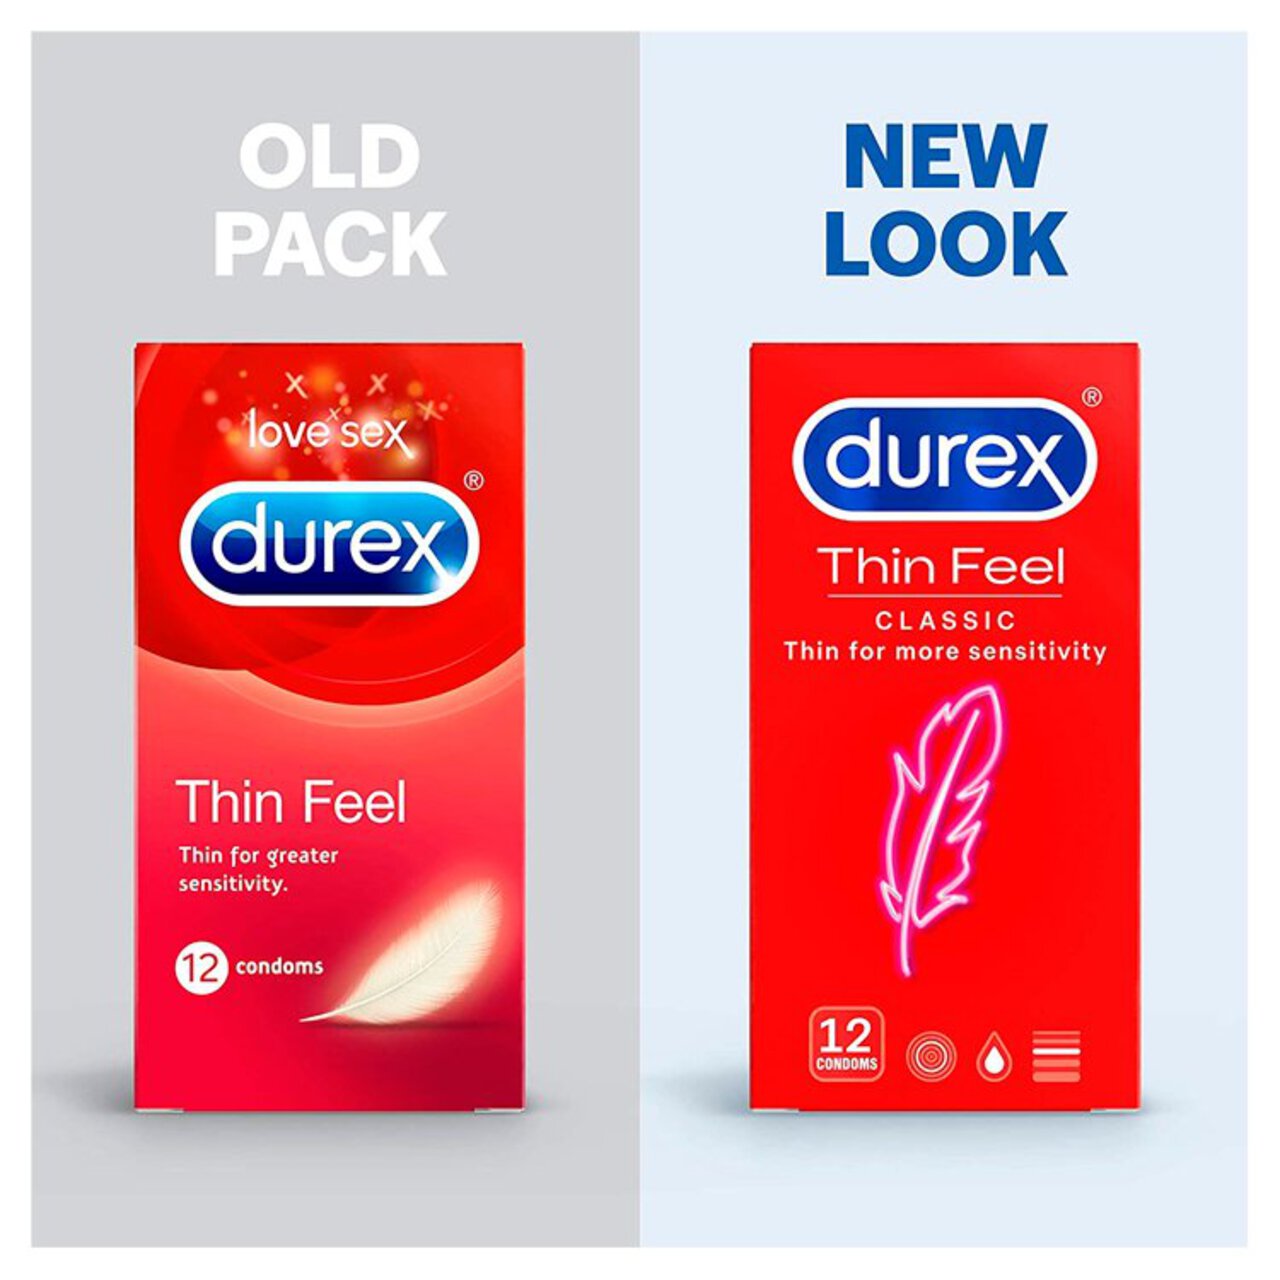 Durex Thin Feel 30 Condoms 30 per pack